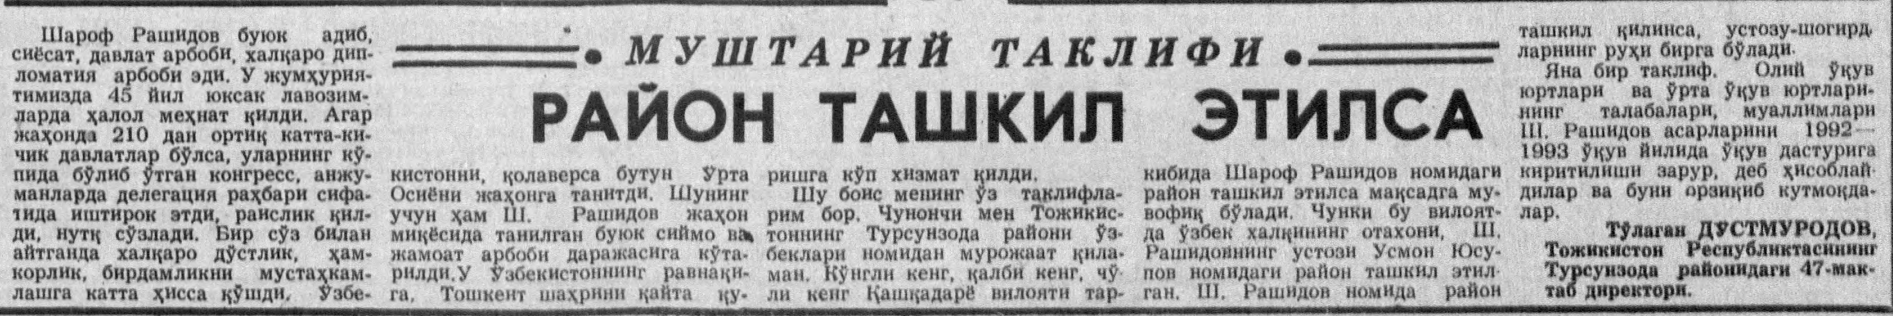 «Ўзбекистон овози» газетасининг 1992 йил 5 май сонидан лавҳа